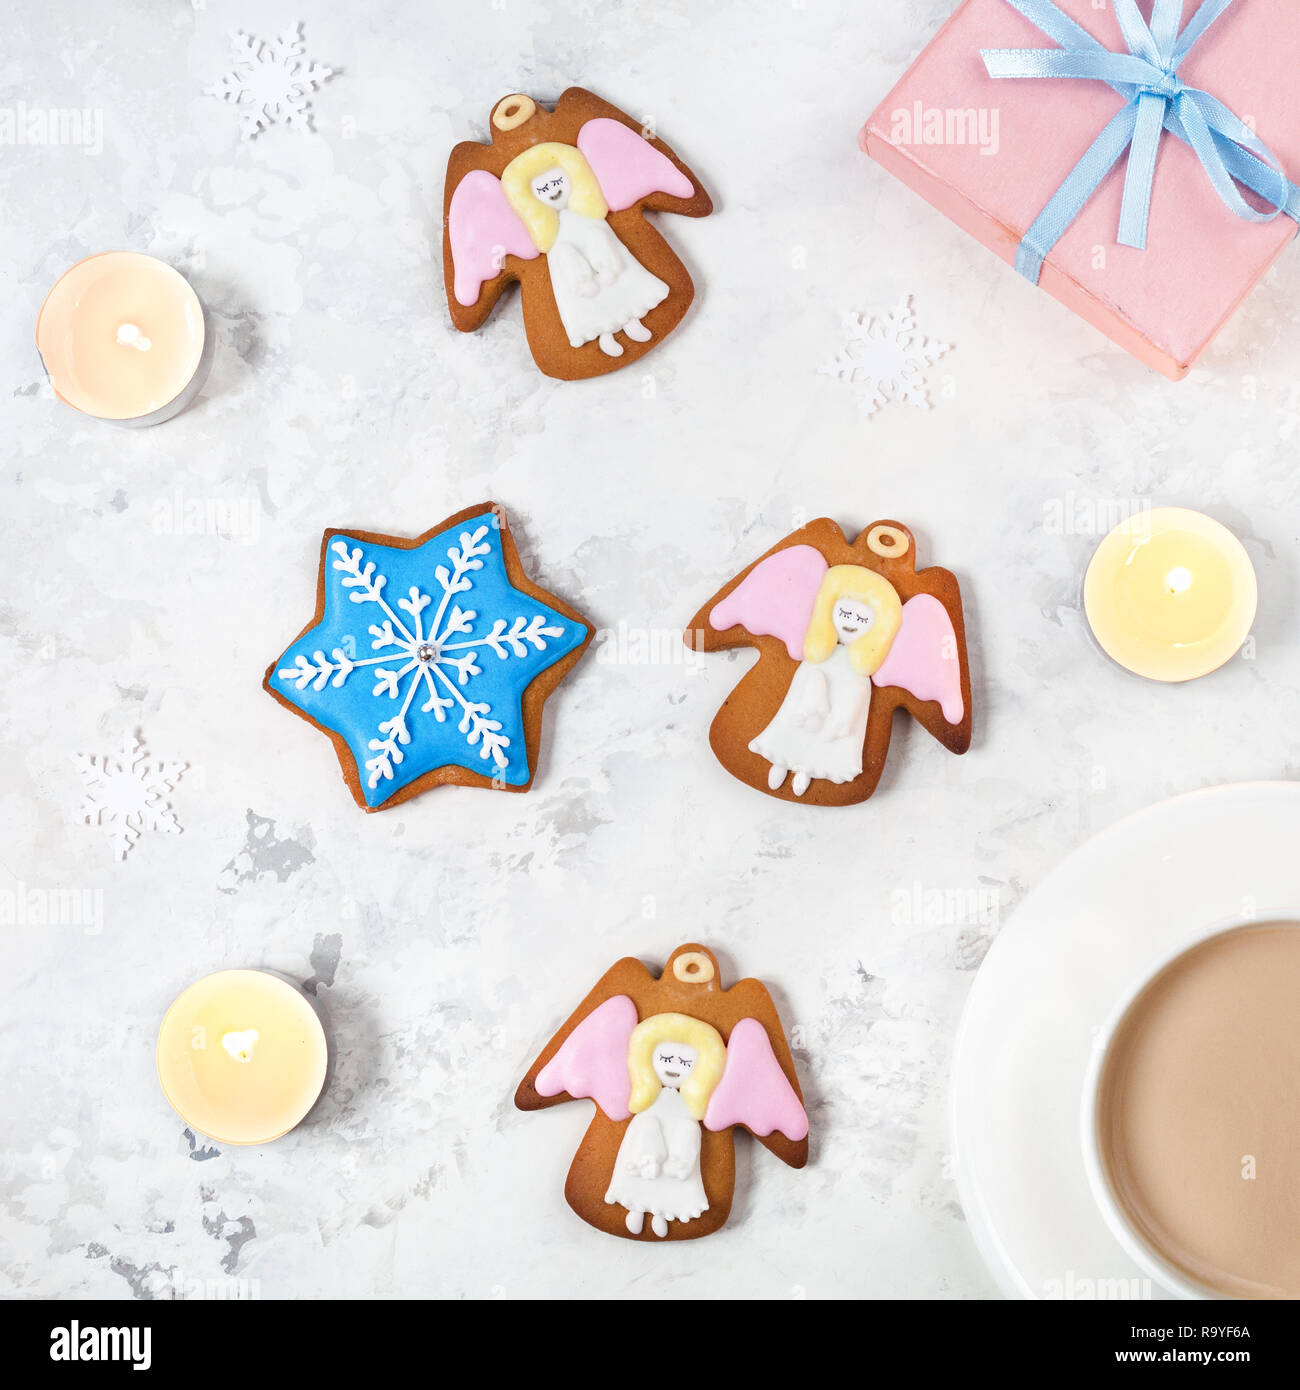 Angels cookies, boîte cadeau et tasse de café près de bougies sur fond blanc Banque D'Images